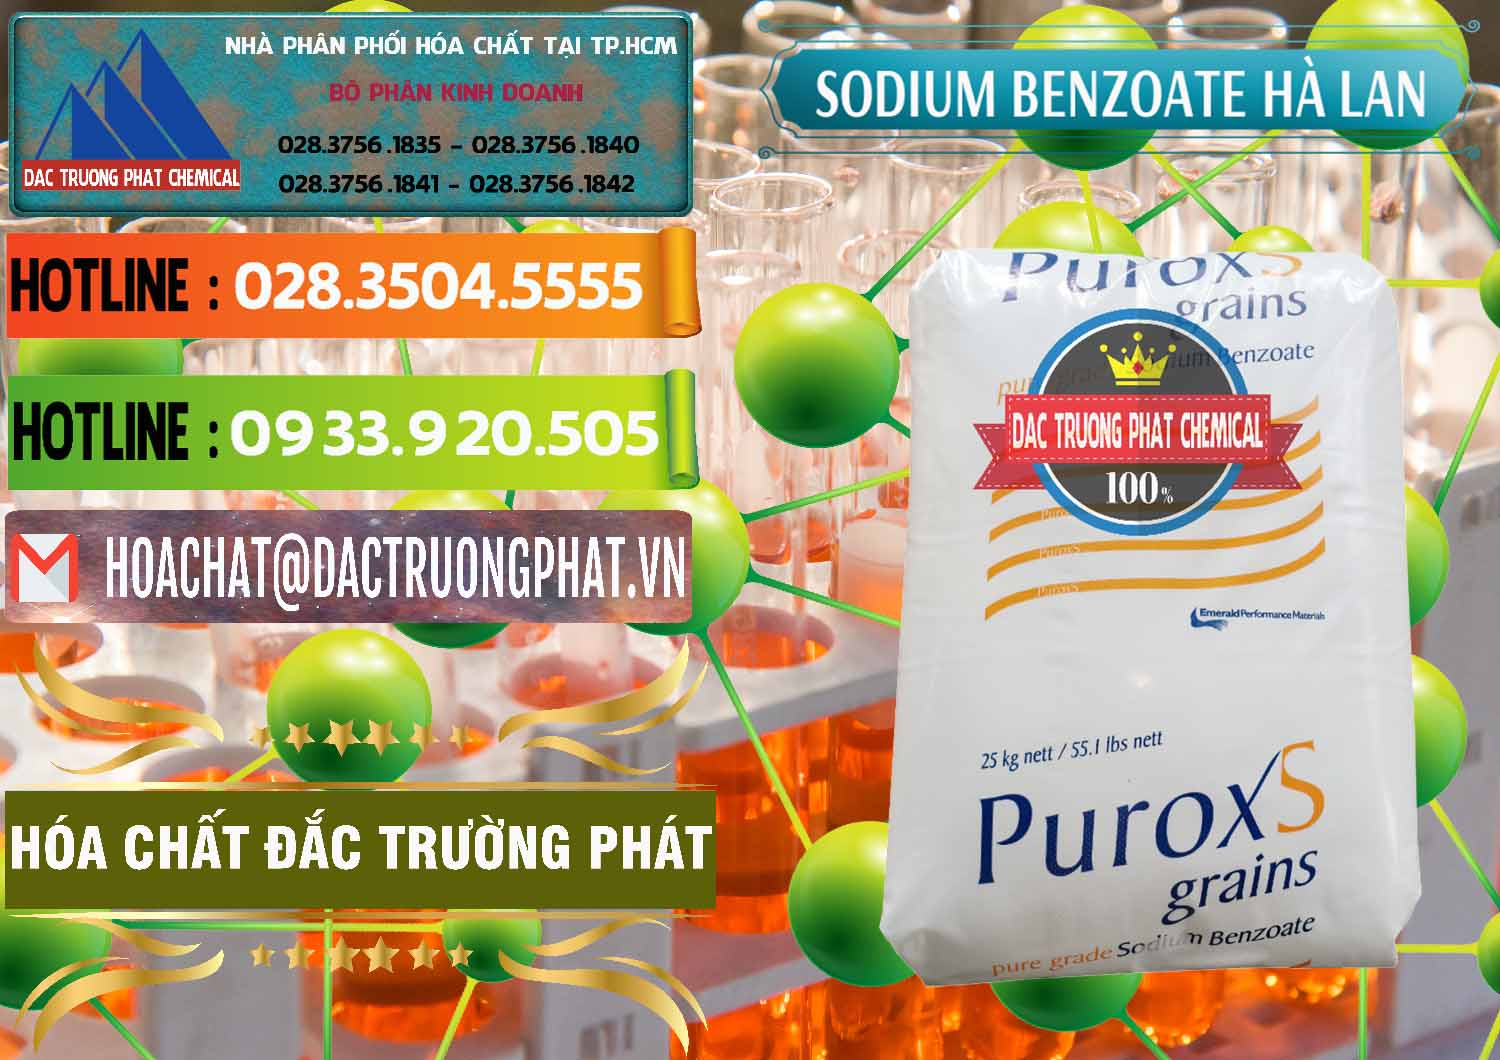 Cty chuyên cung ứng - bán Sodium Benzoate - Mốc Bột Puroxs Hà Lan Netherlands - 0467 - Công ty chuyên cung cấp & nhập khẩu hóa chất tại TP.HCM - cungcaphoachat.com.vn